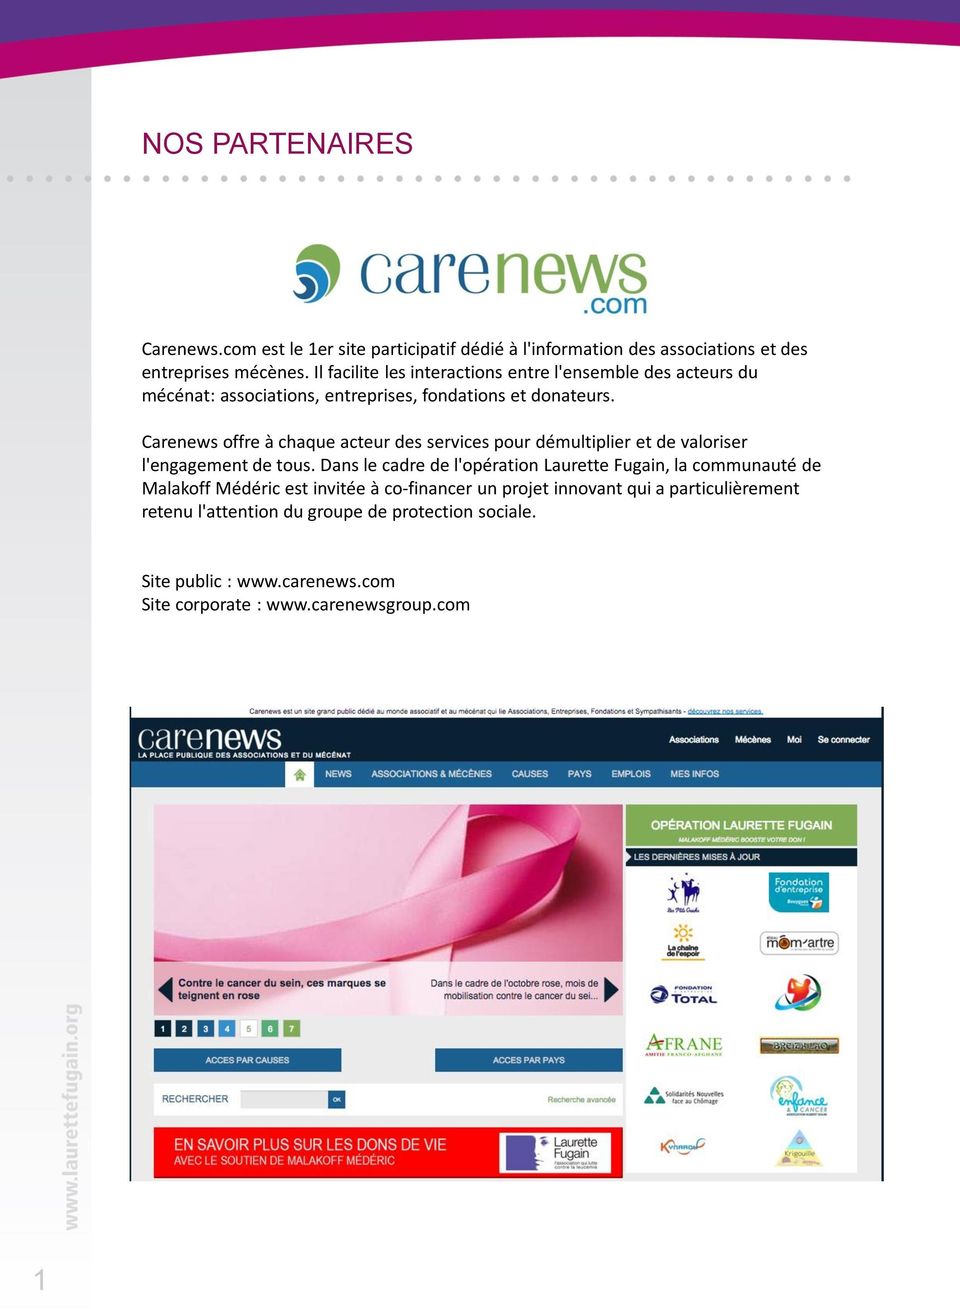 Carenews offre à chaque acteur des services pour démultiplier et de valoriser l'engagement de tous.